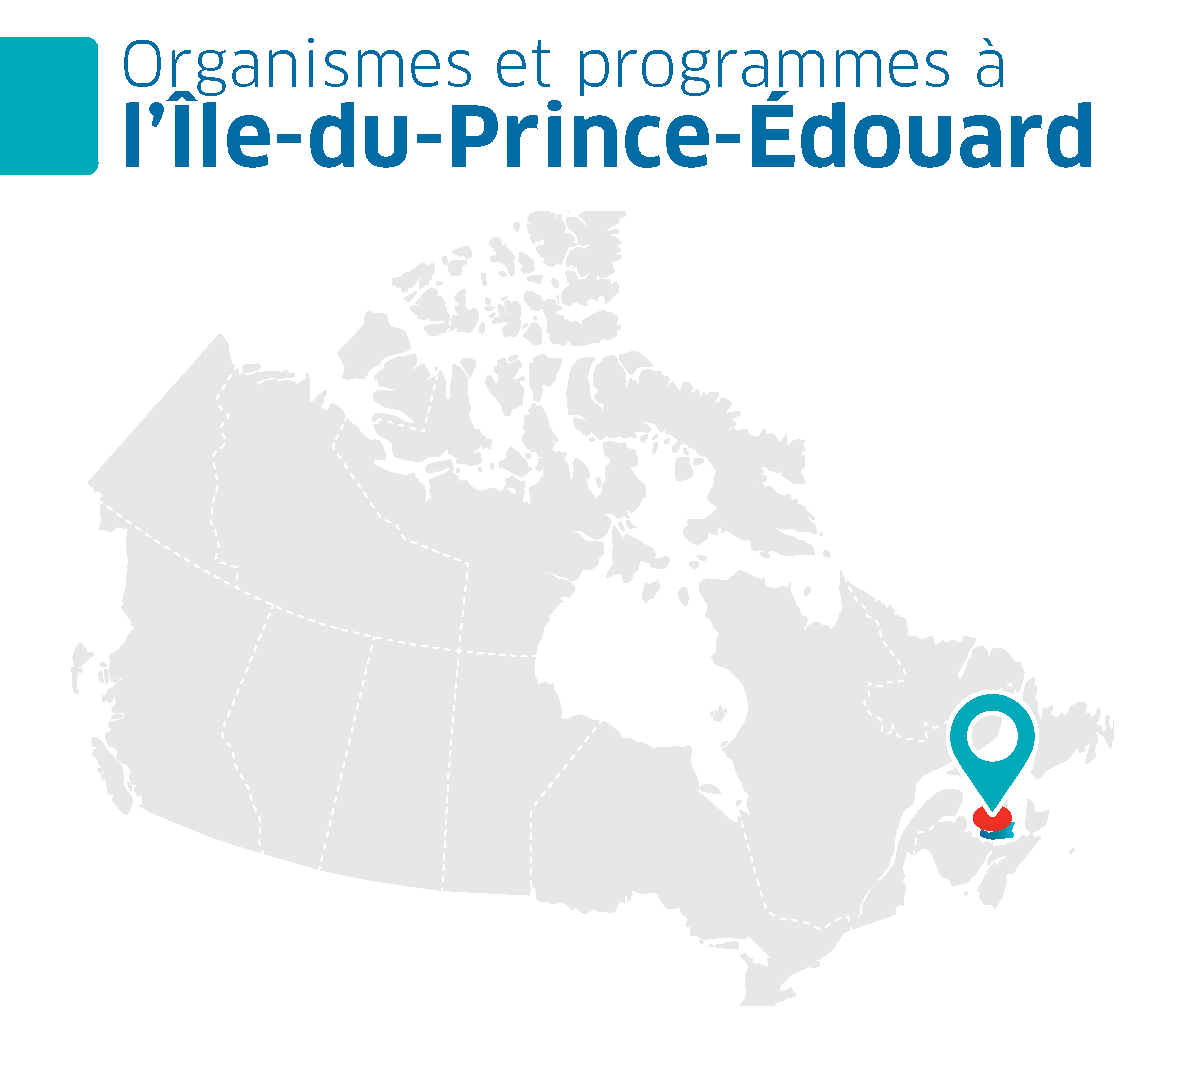 Une carte du Canada avec la province de l'Île-du-Prince-Édouard en surbrillance